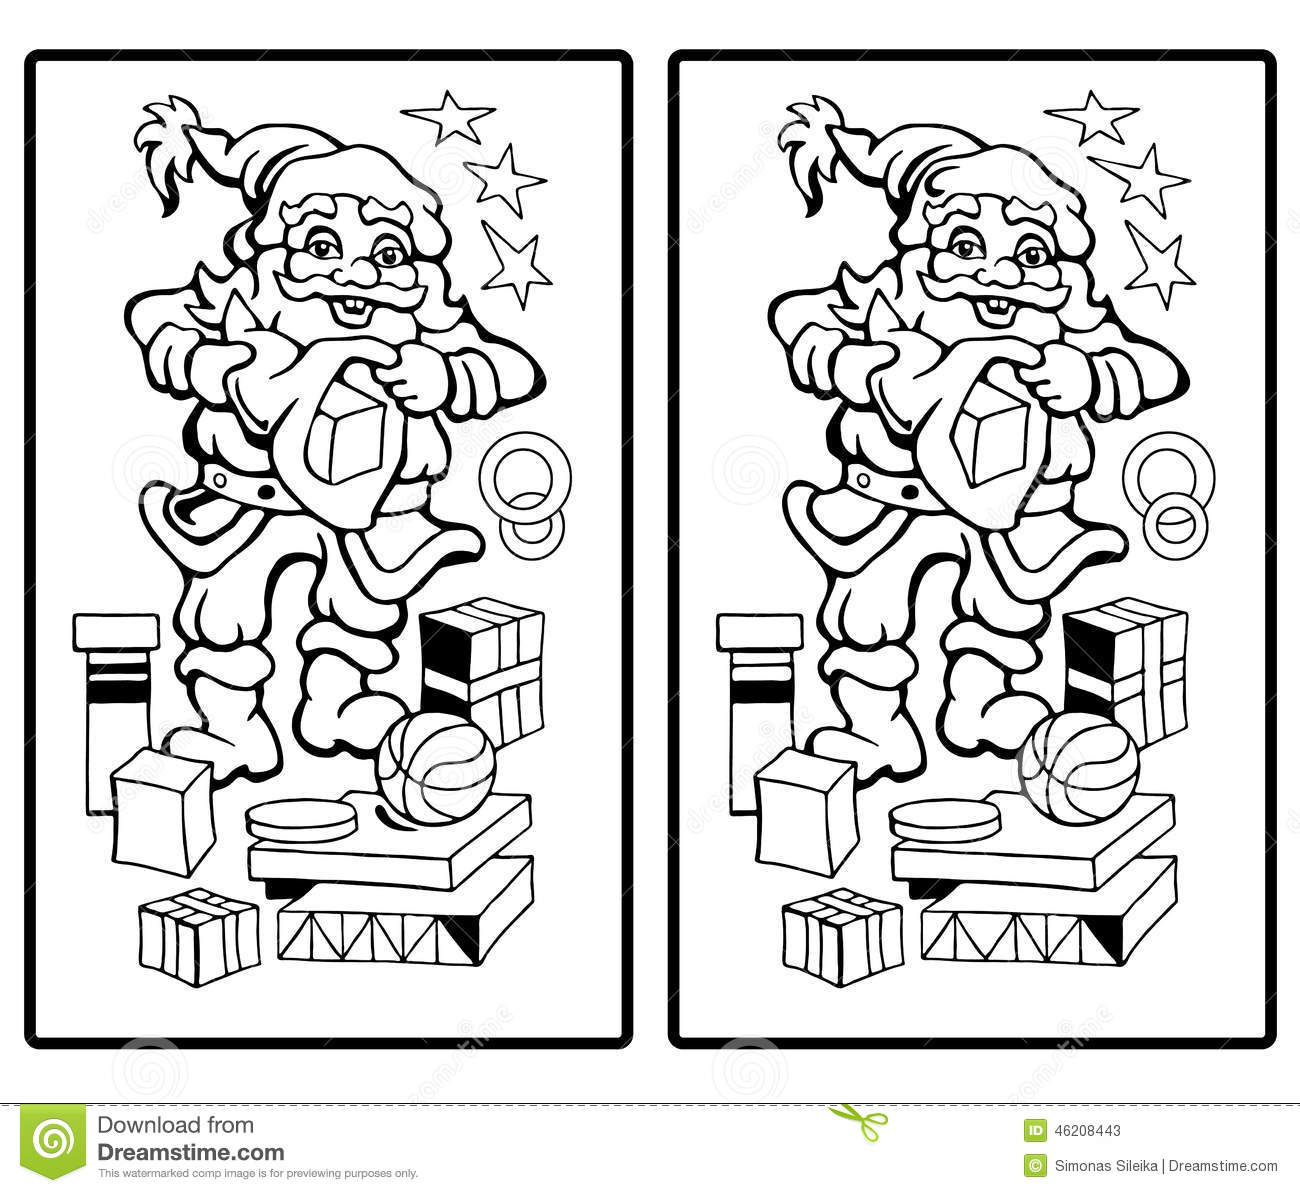 Santa Claus - Find The Ten Differences Stock Illustration verwandt mit Kinder Bilder Unterschiede Finden